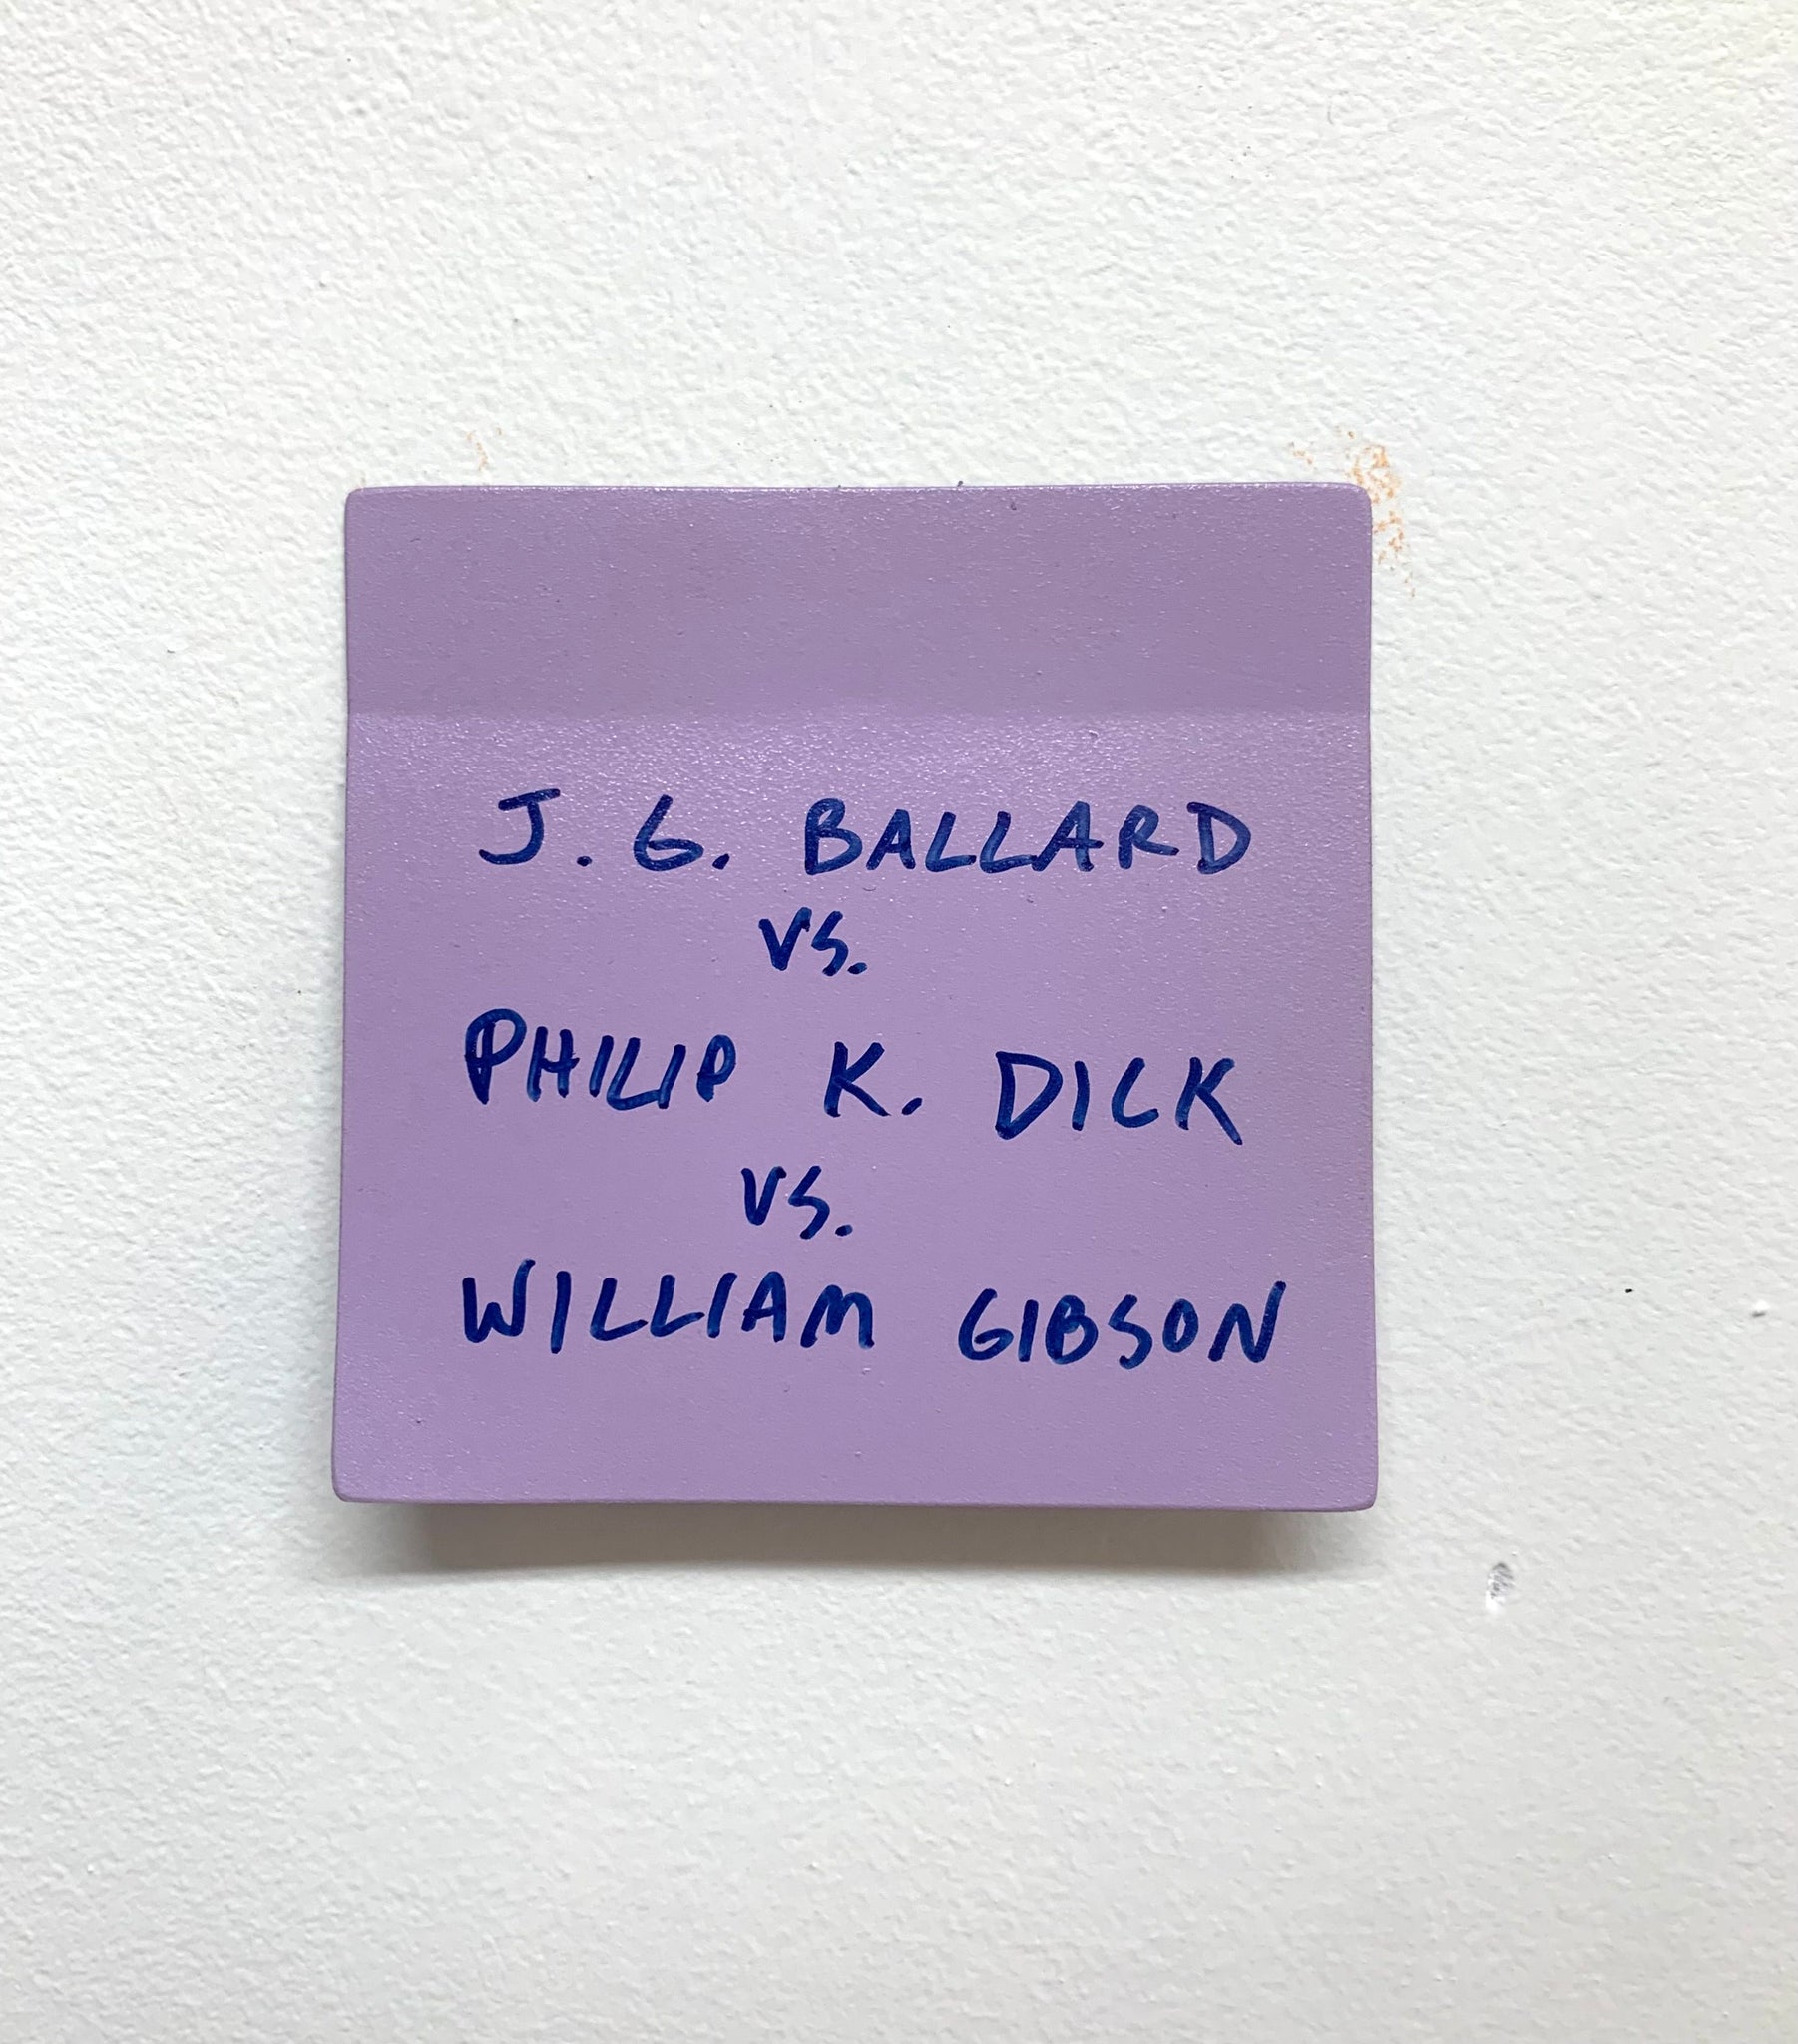 Stuart Lantry, "J.G. Ballard vs. Philip K. Dick vs. William Gibson" SOLD